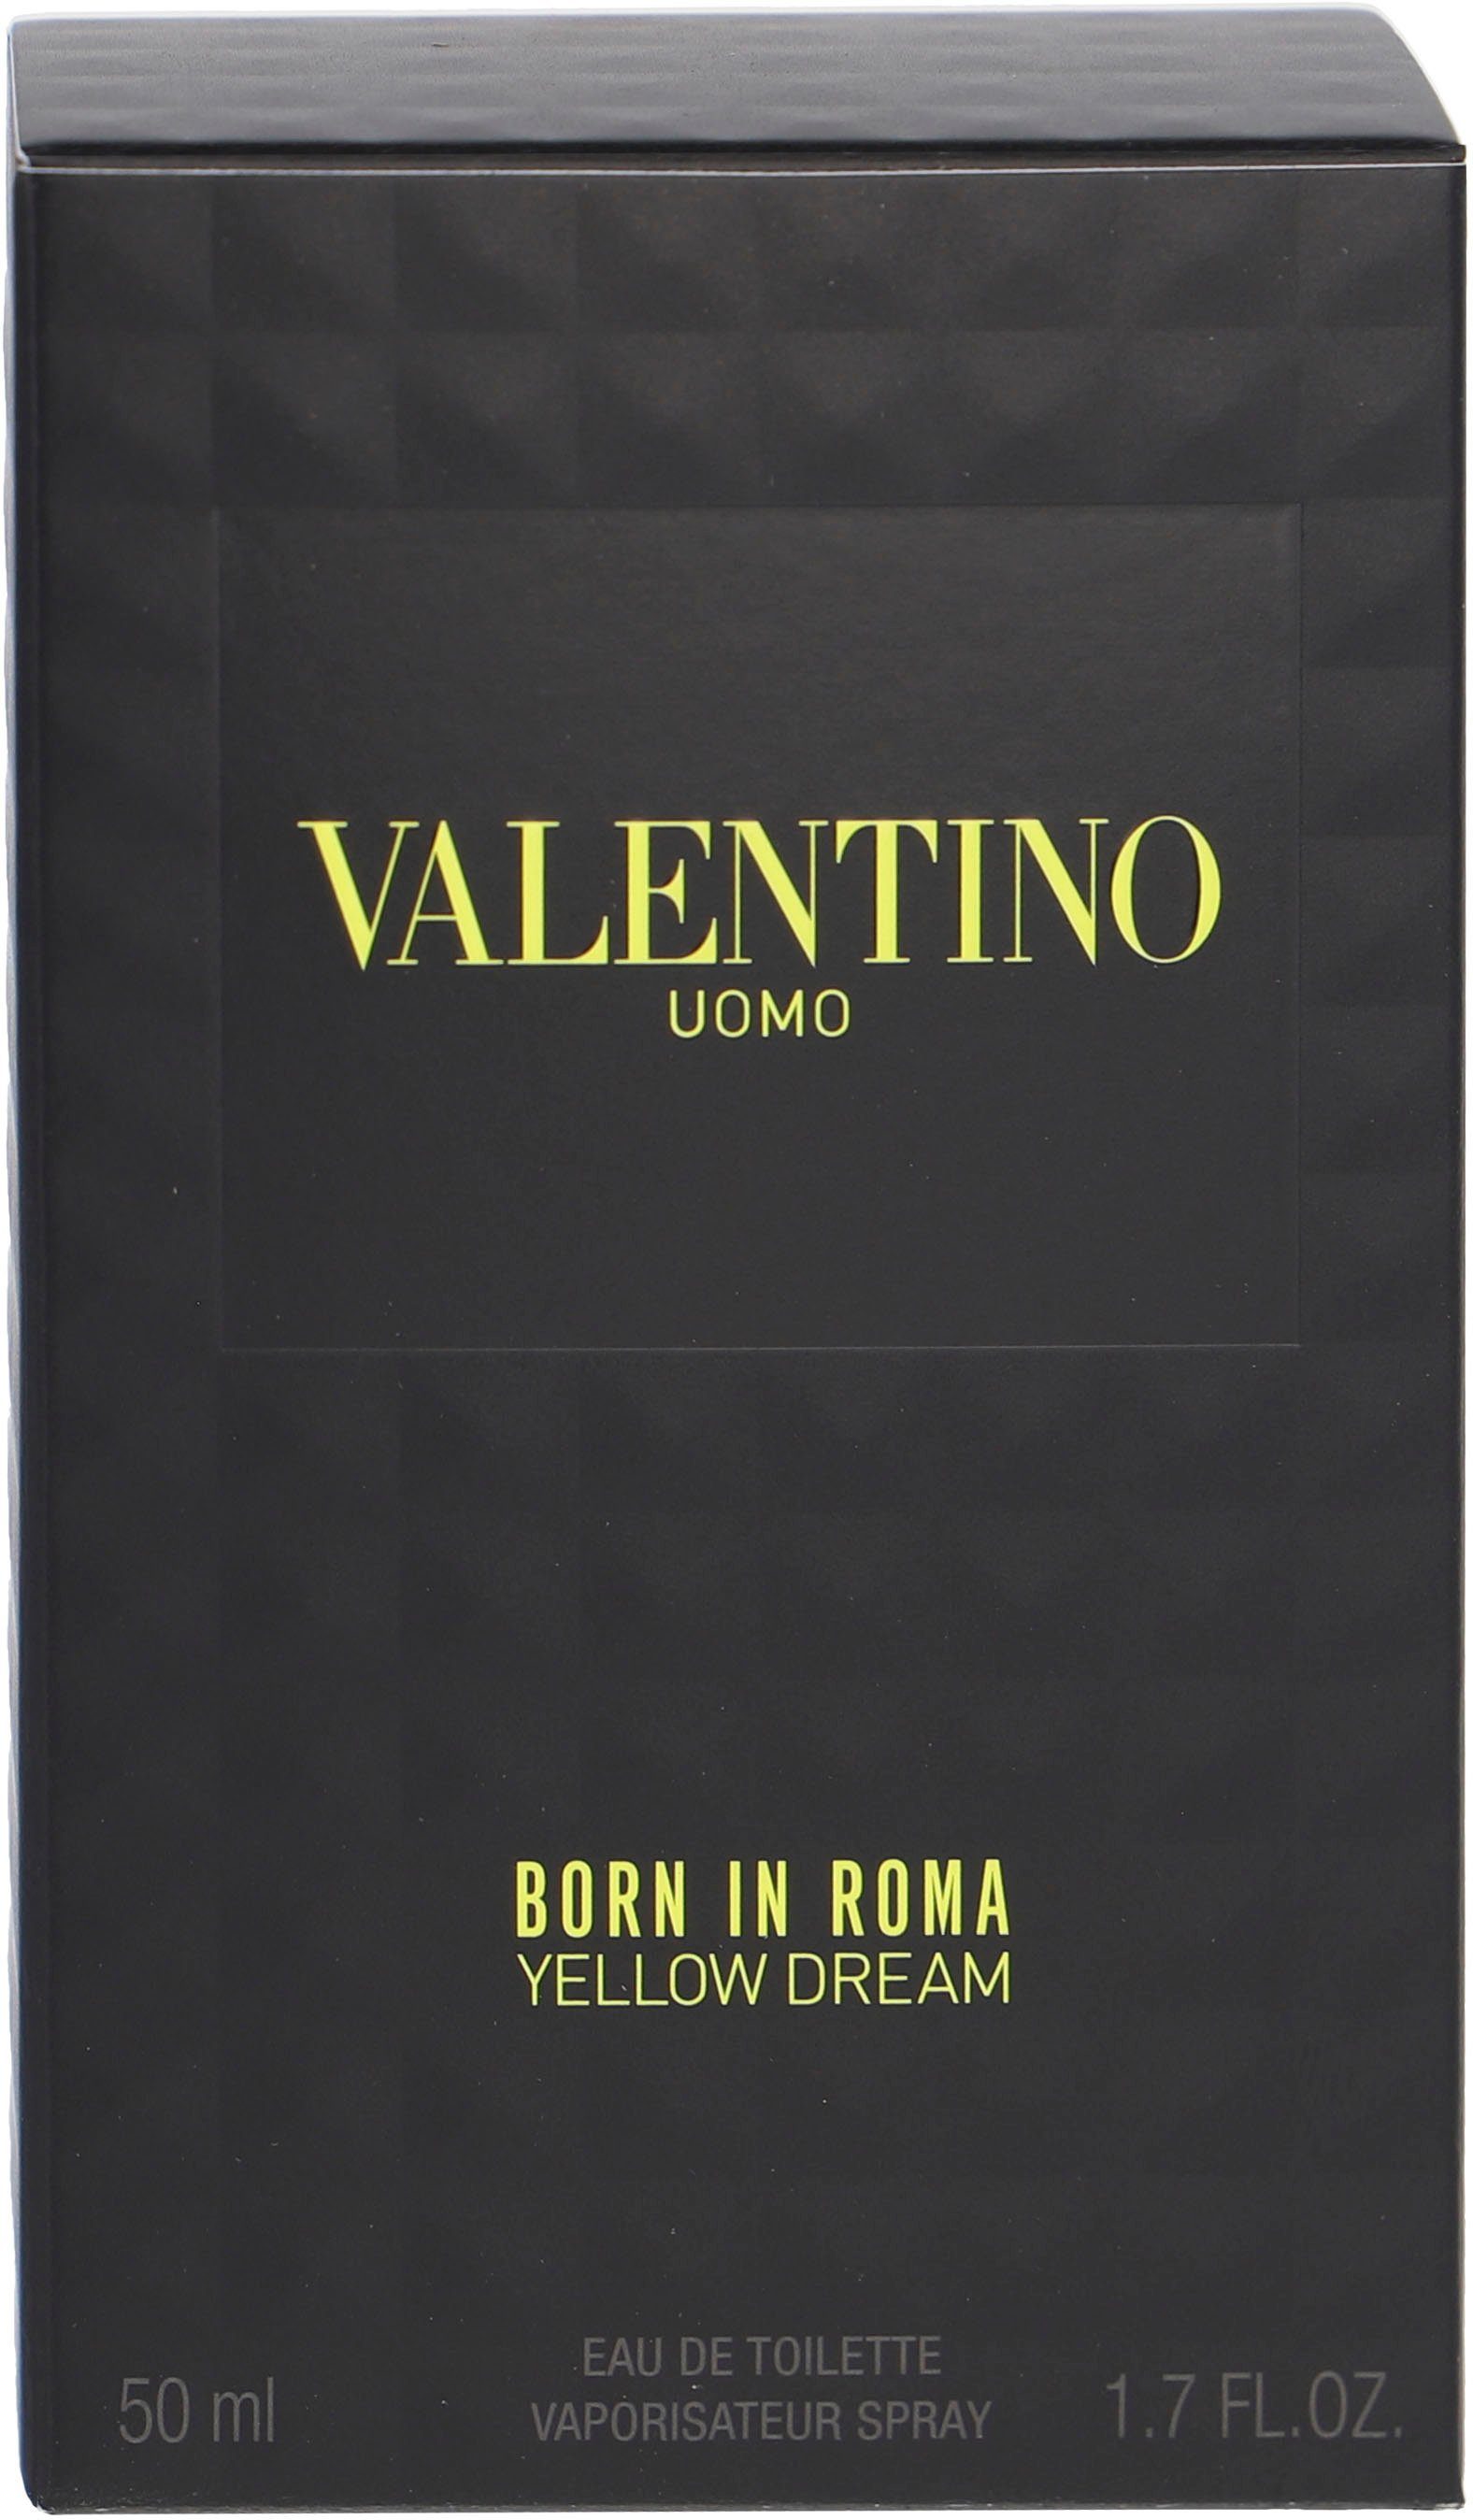 Eau Roma Valentino Born In de Yellow Dream Uomo Toilette